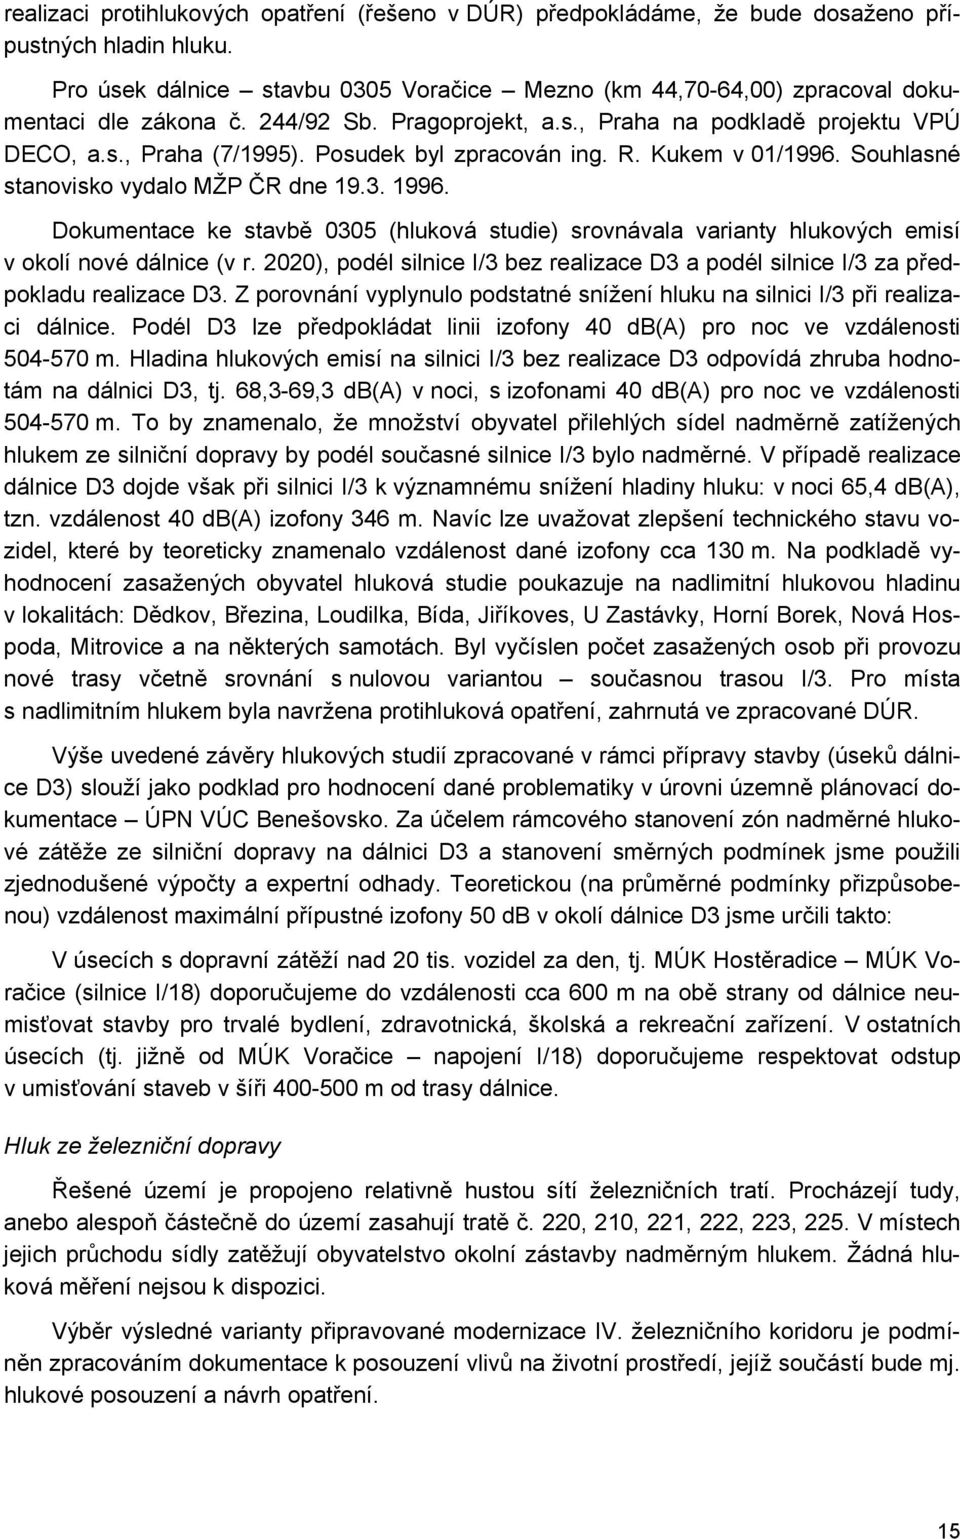 Posudek byl zpracován ing. R. Kukem v 01/1996. Souhlasné stanovisko vydalo MŽP ČR dne 19.3. 1996.